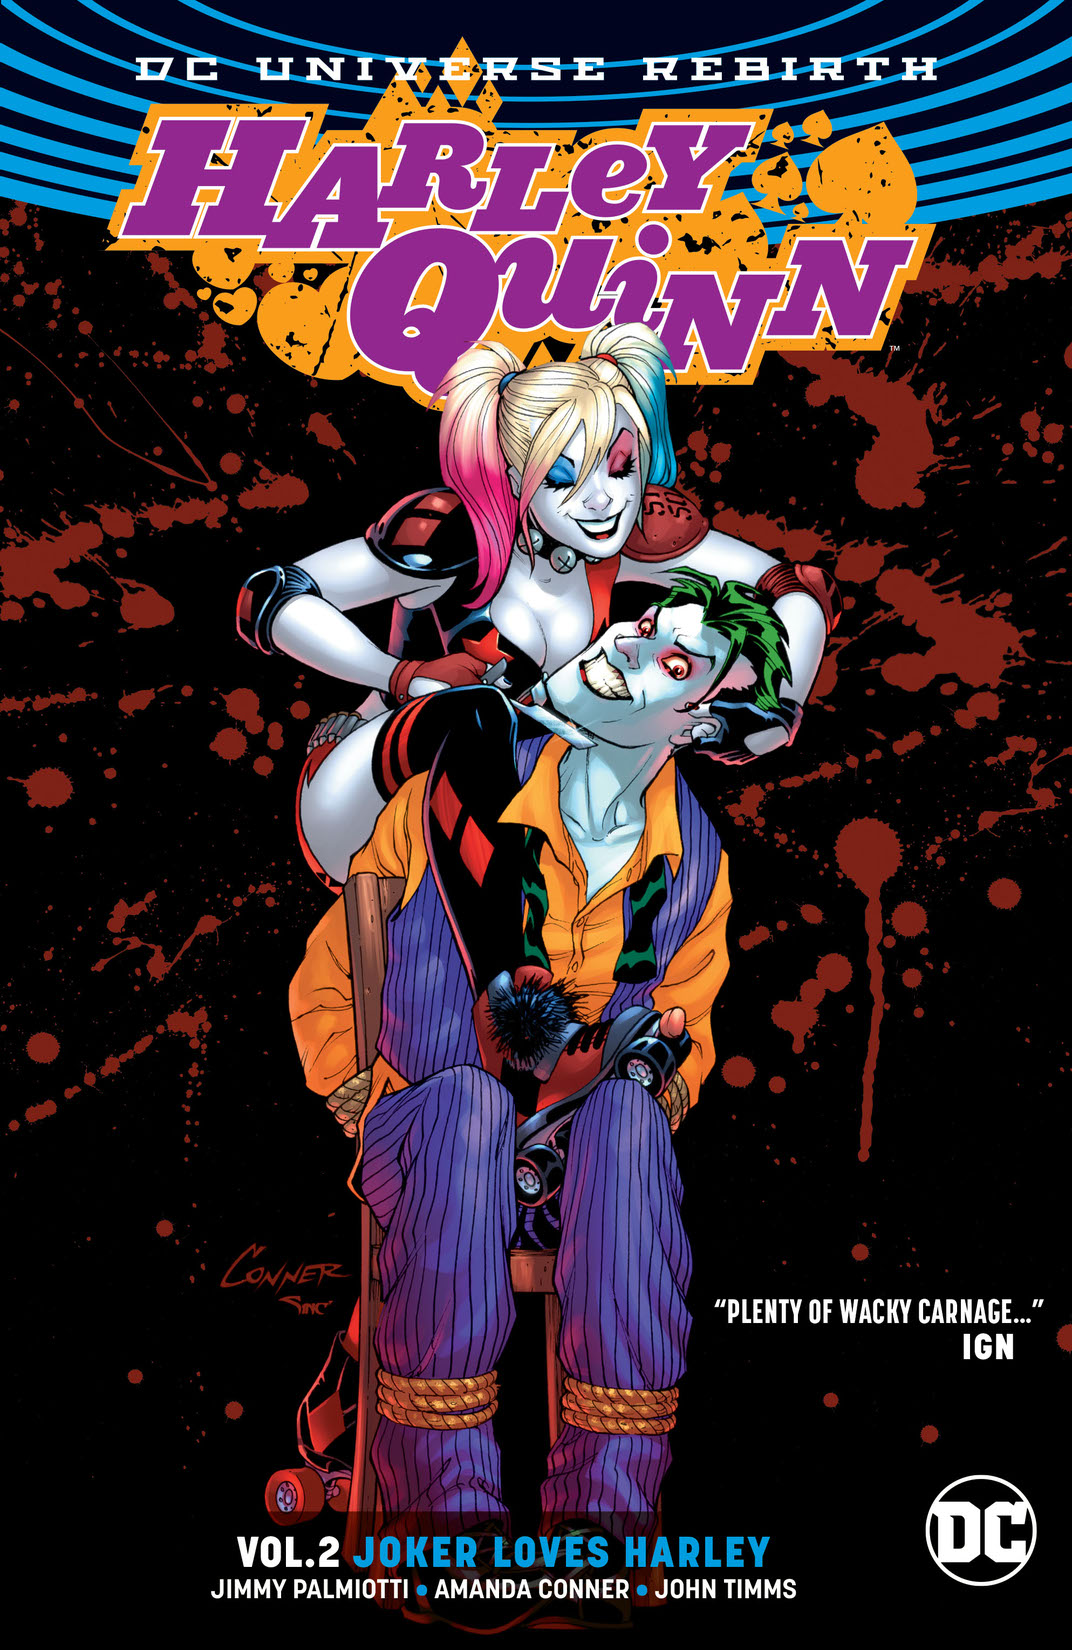 Harley Quinn Vol. 2: Joker Loves Harley preview images